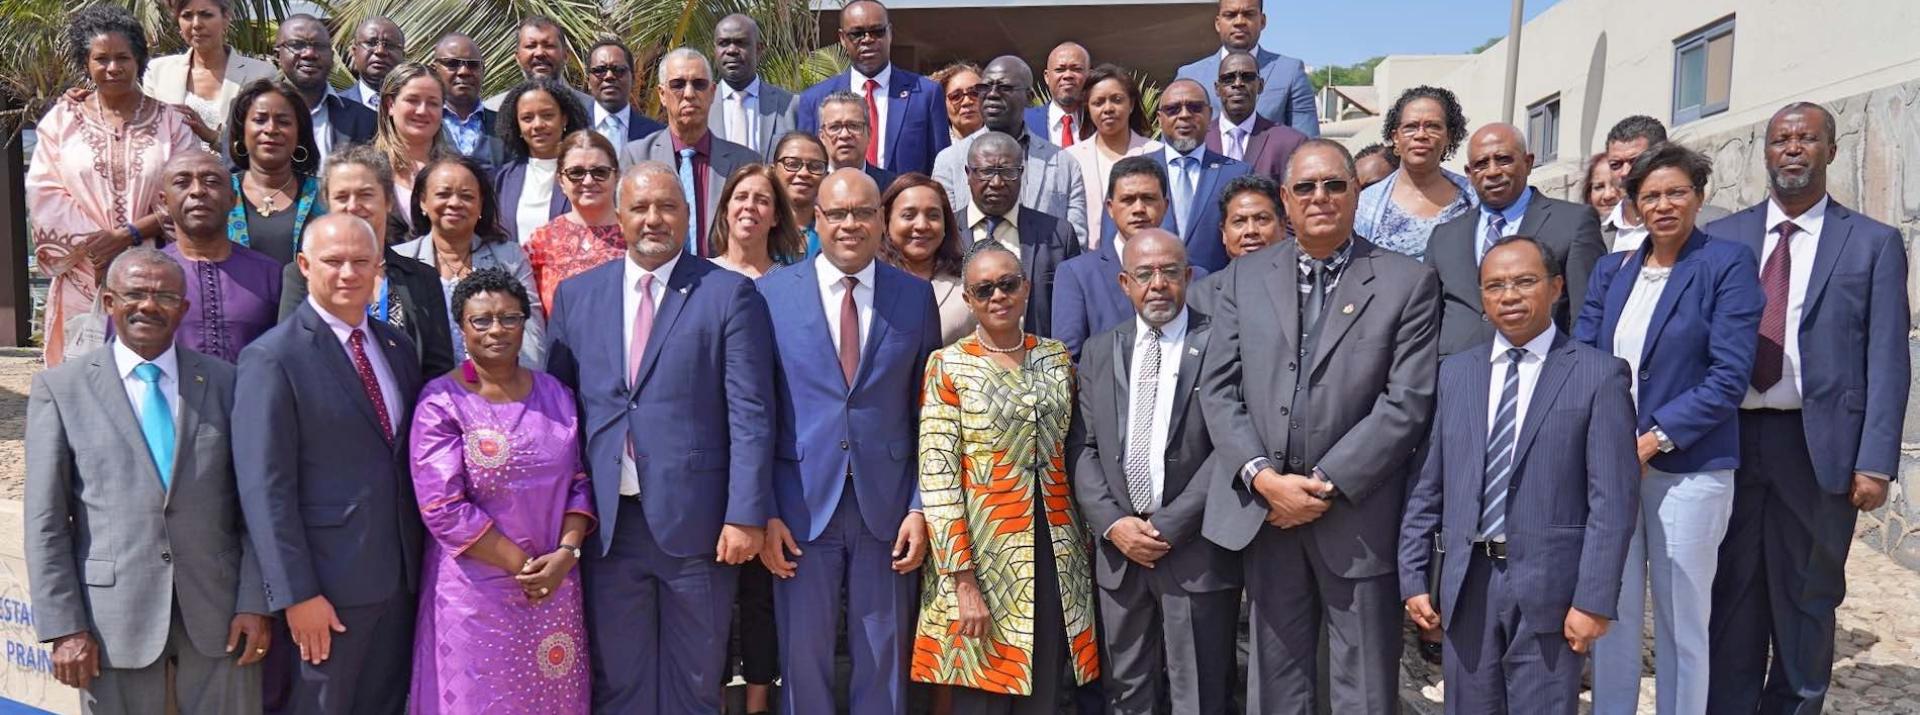 Estados Insulares da Região Africana concordam na aquisição conjunta de medicamentos